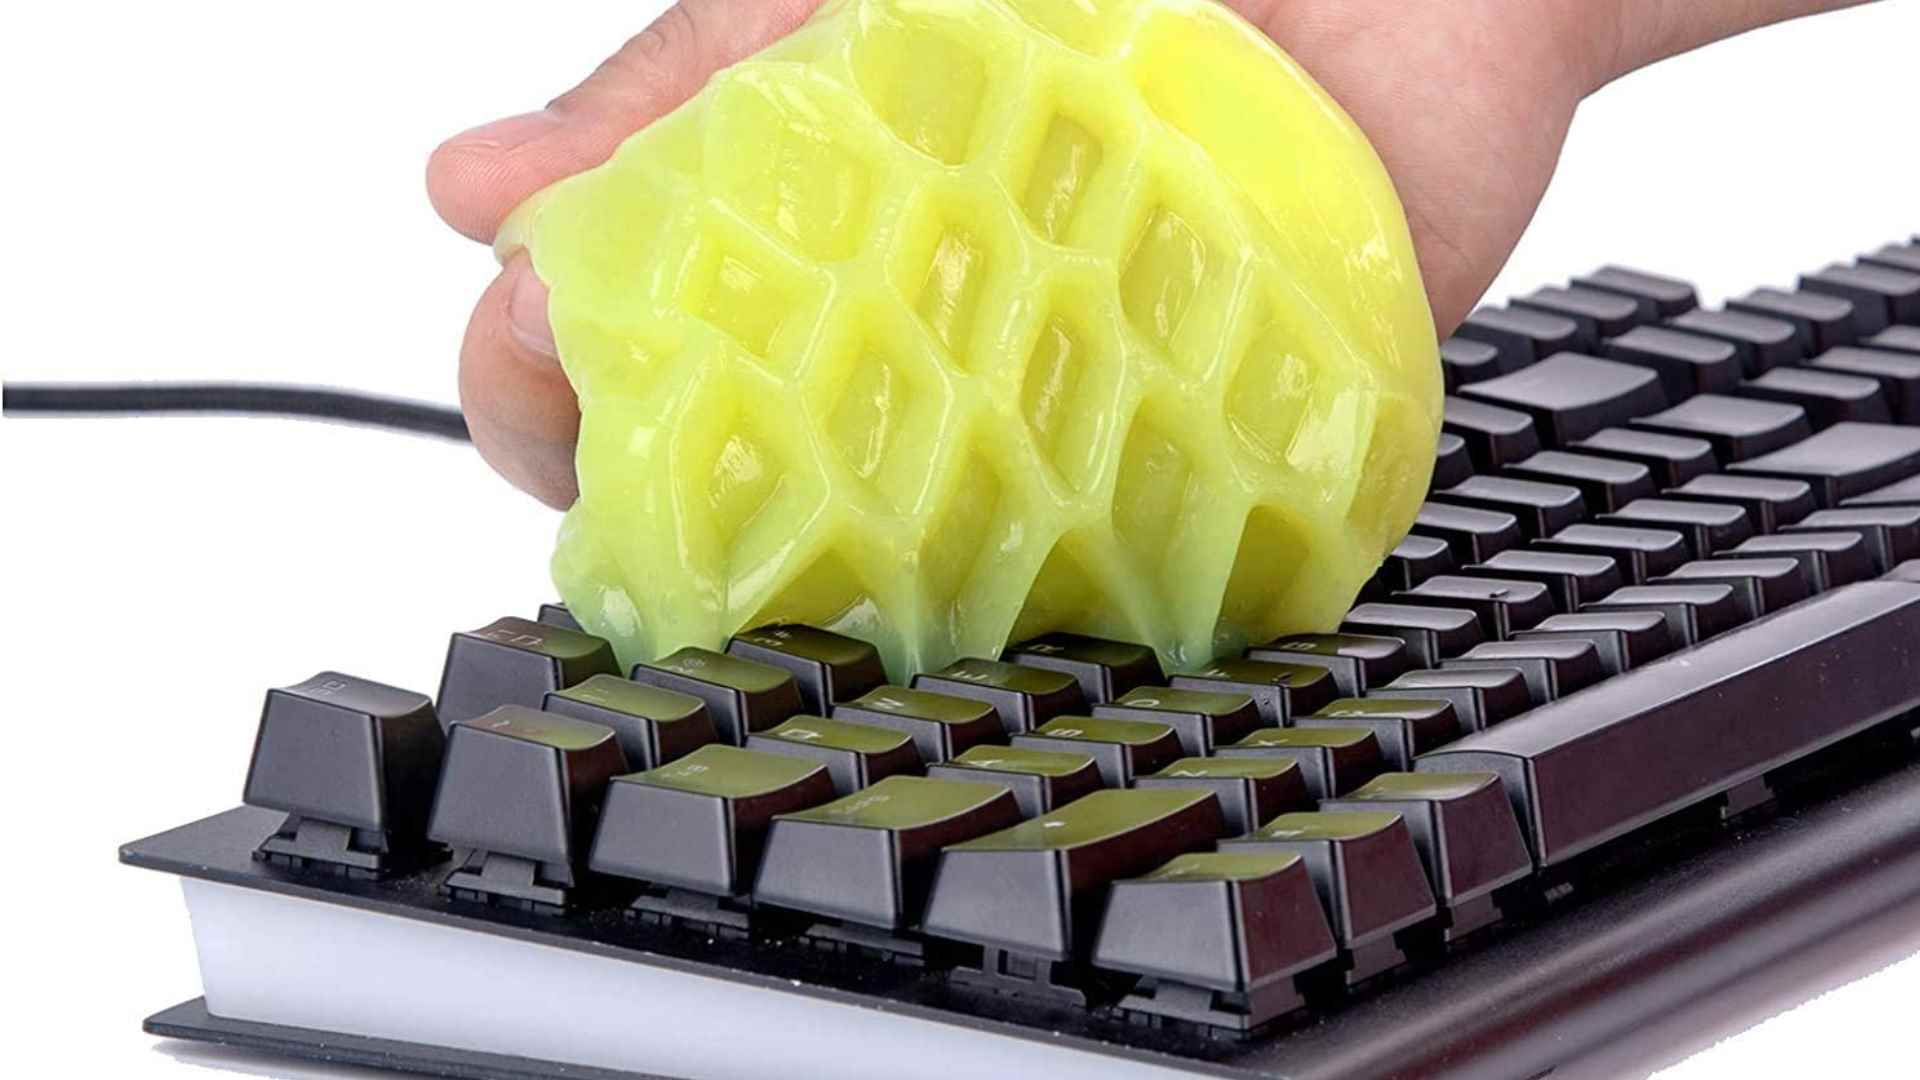 Klavye nasıl temizlenir: Macun jeli kullanan biriyle genel klavye